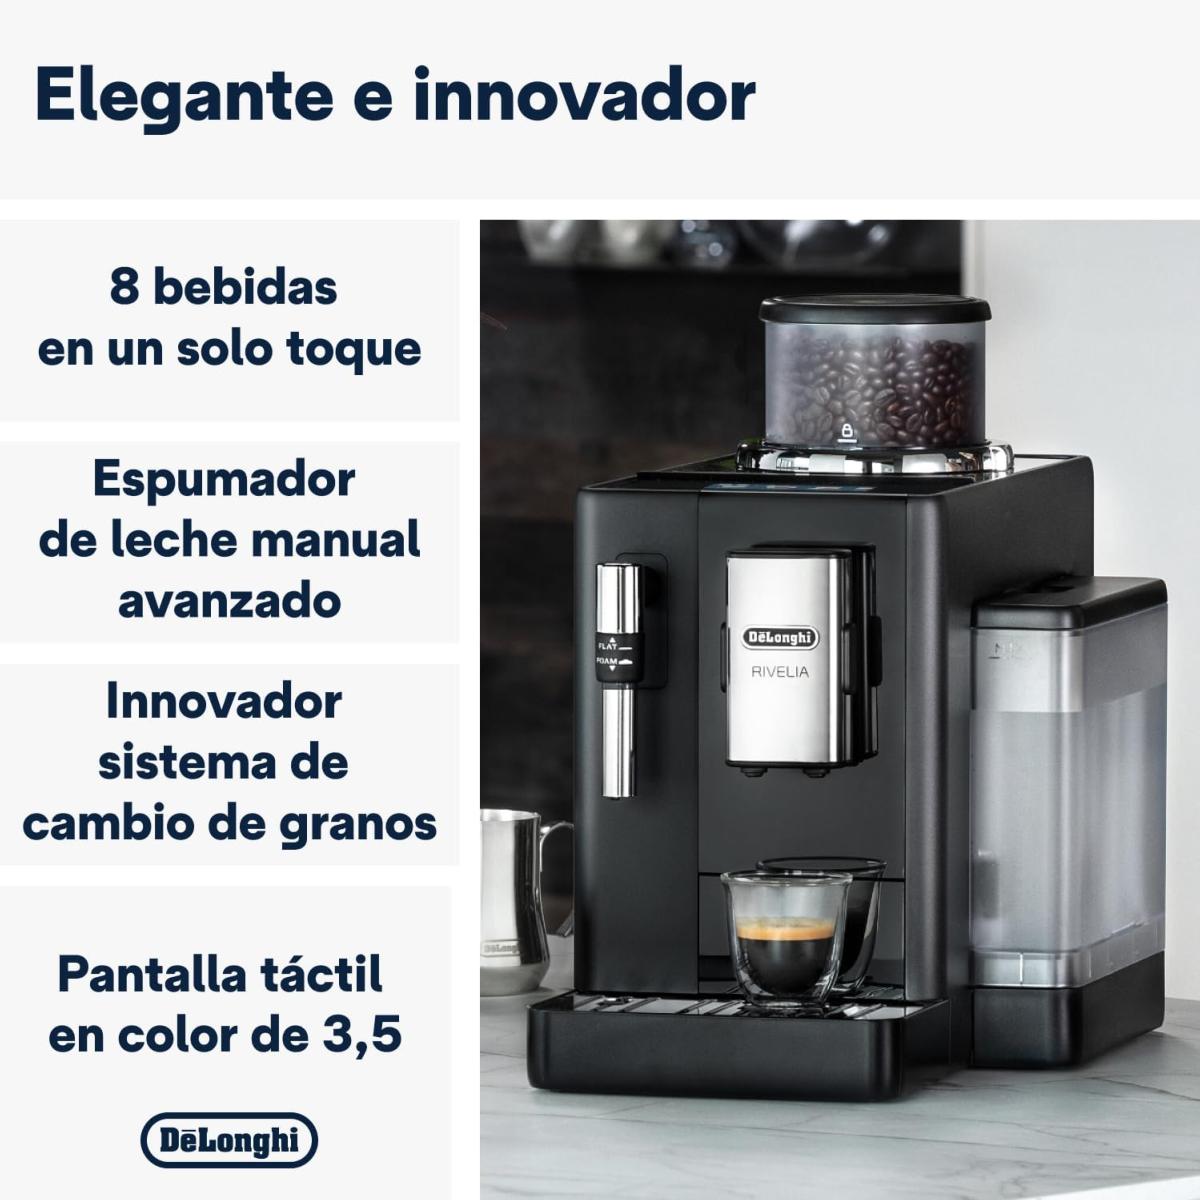 ☕ Cafetera Superautomática DELONGHI RIVELIA☕ Opinión Español 